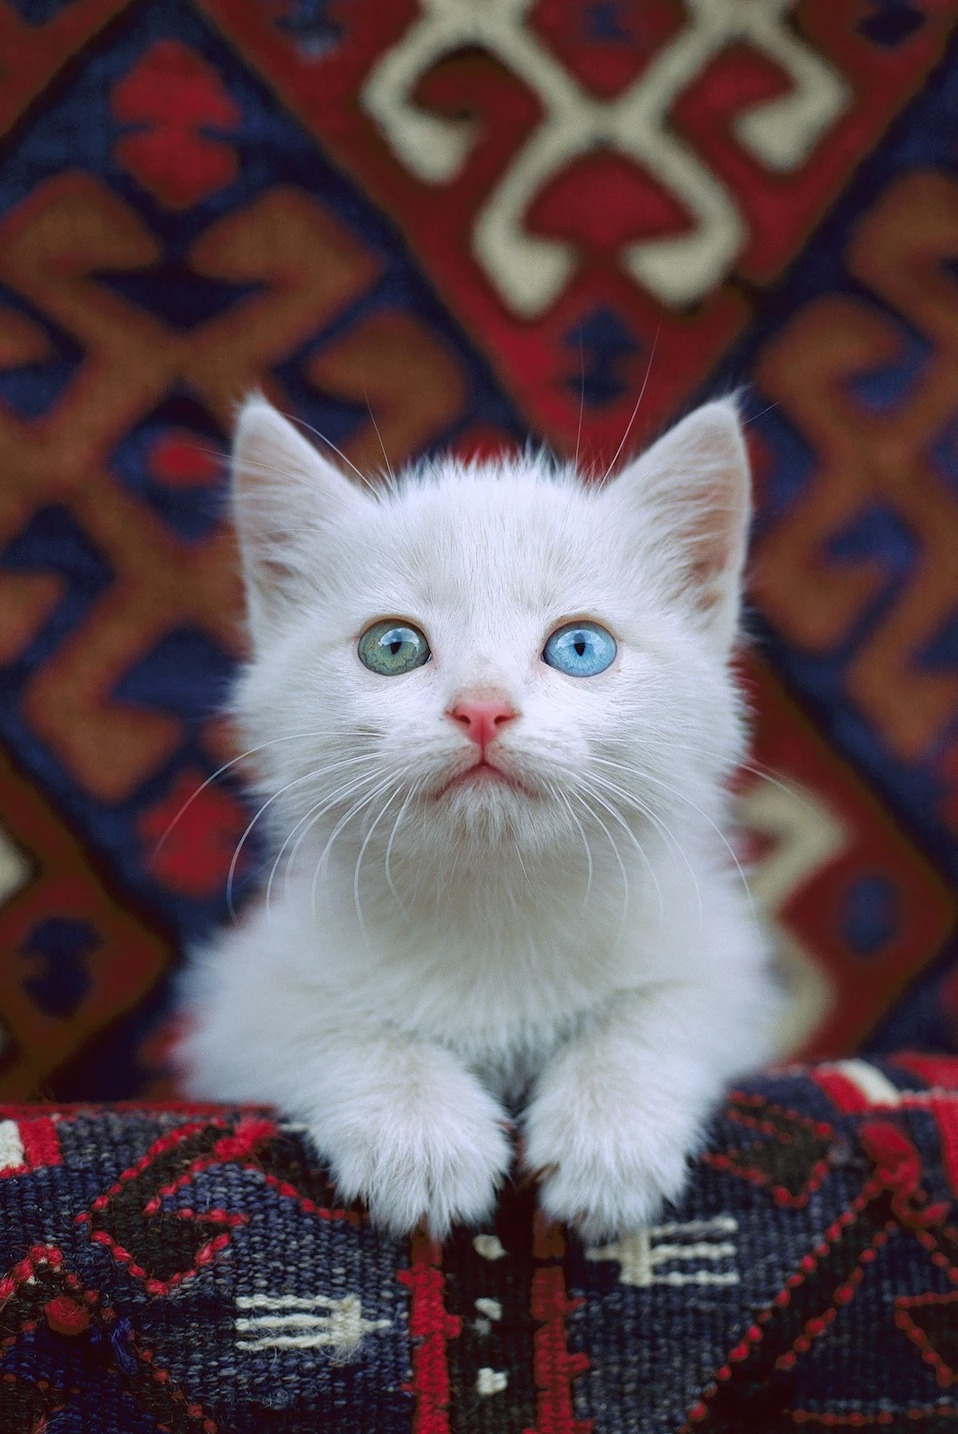 這隻小貓雖然有虹膜異色症──雙眼一藍一綠──但這並不會影響牠的視力。 PHOTOGRAPH BY MITSUAKI IWAGO, MINDEN PICTURES